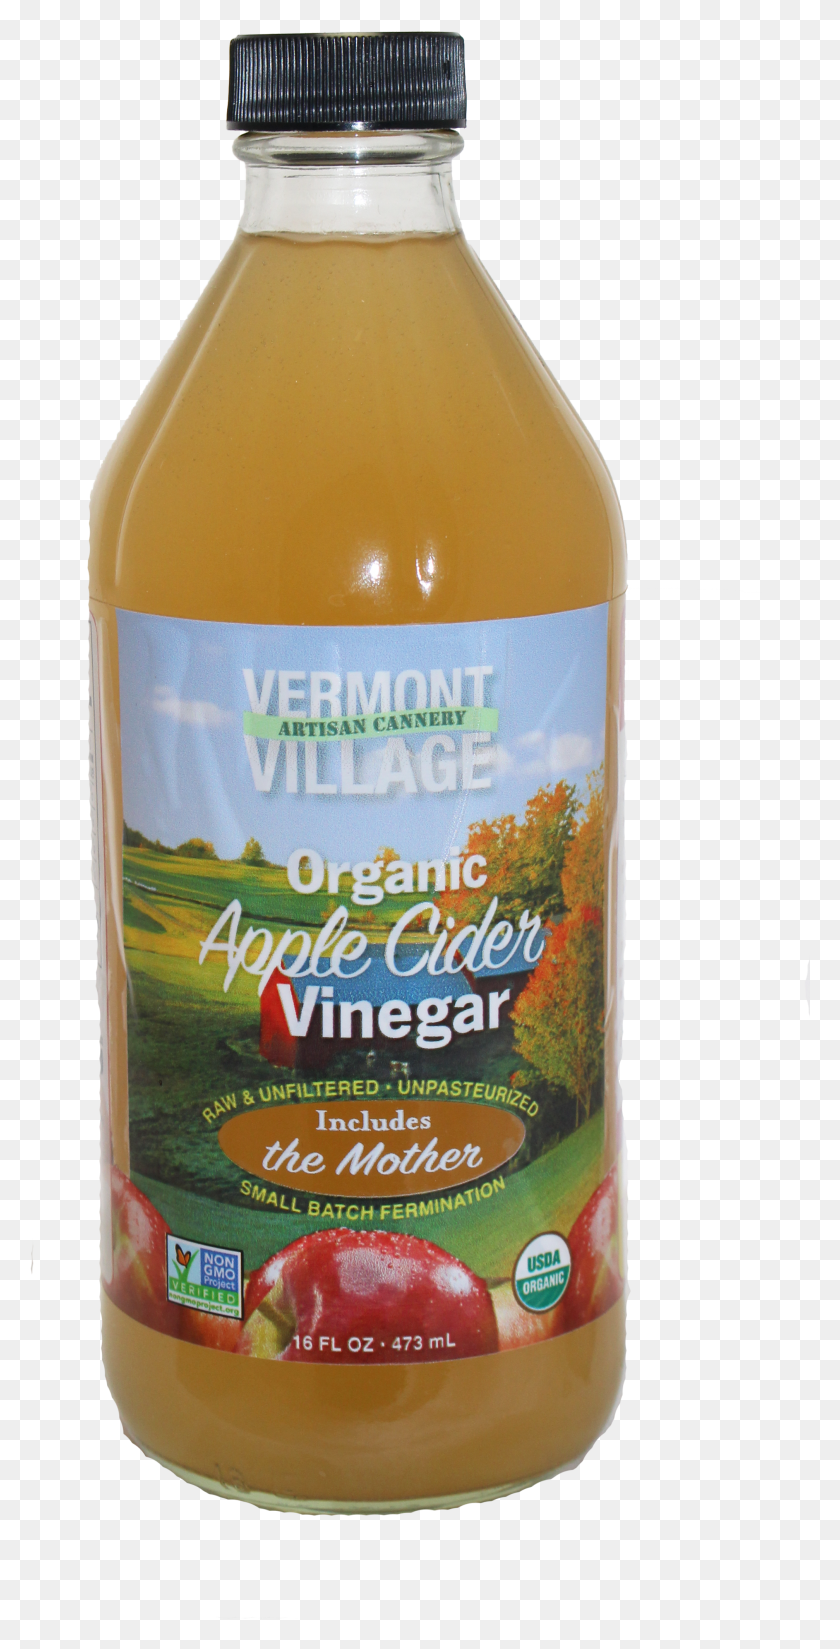 2015x4105 Vermont Village Cannery Apple Cider Vinegar Vermont Village Organic Apple Cider Vinegar HD PNG Download